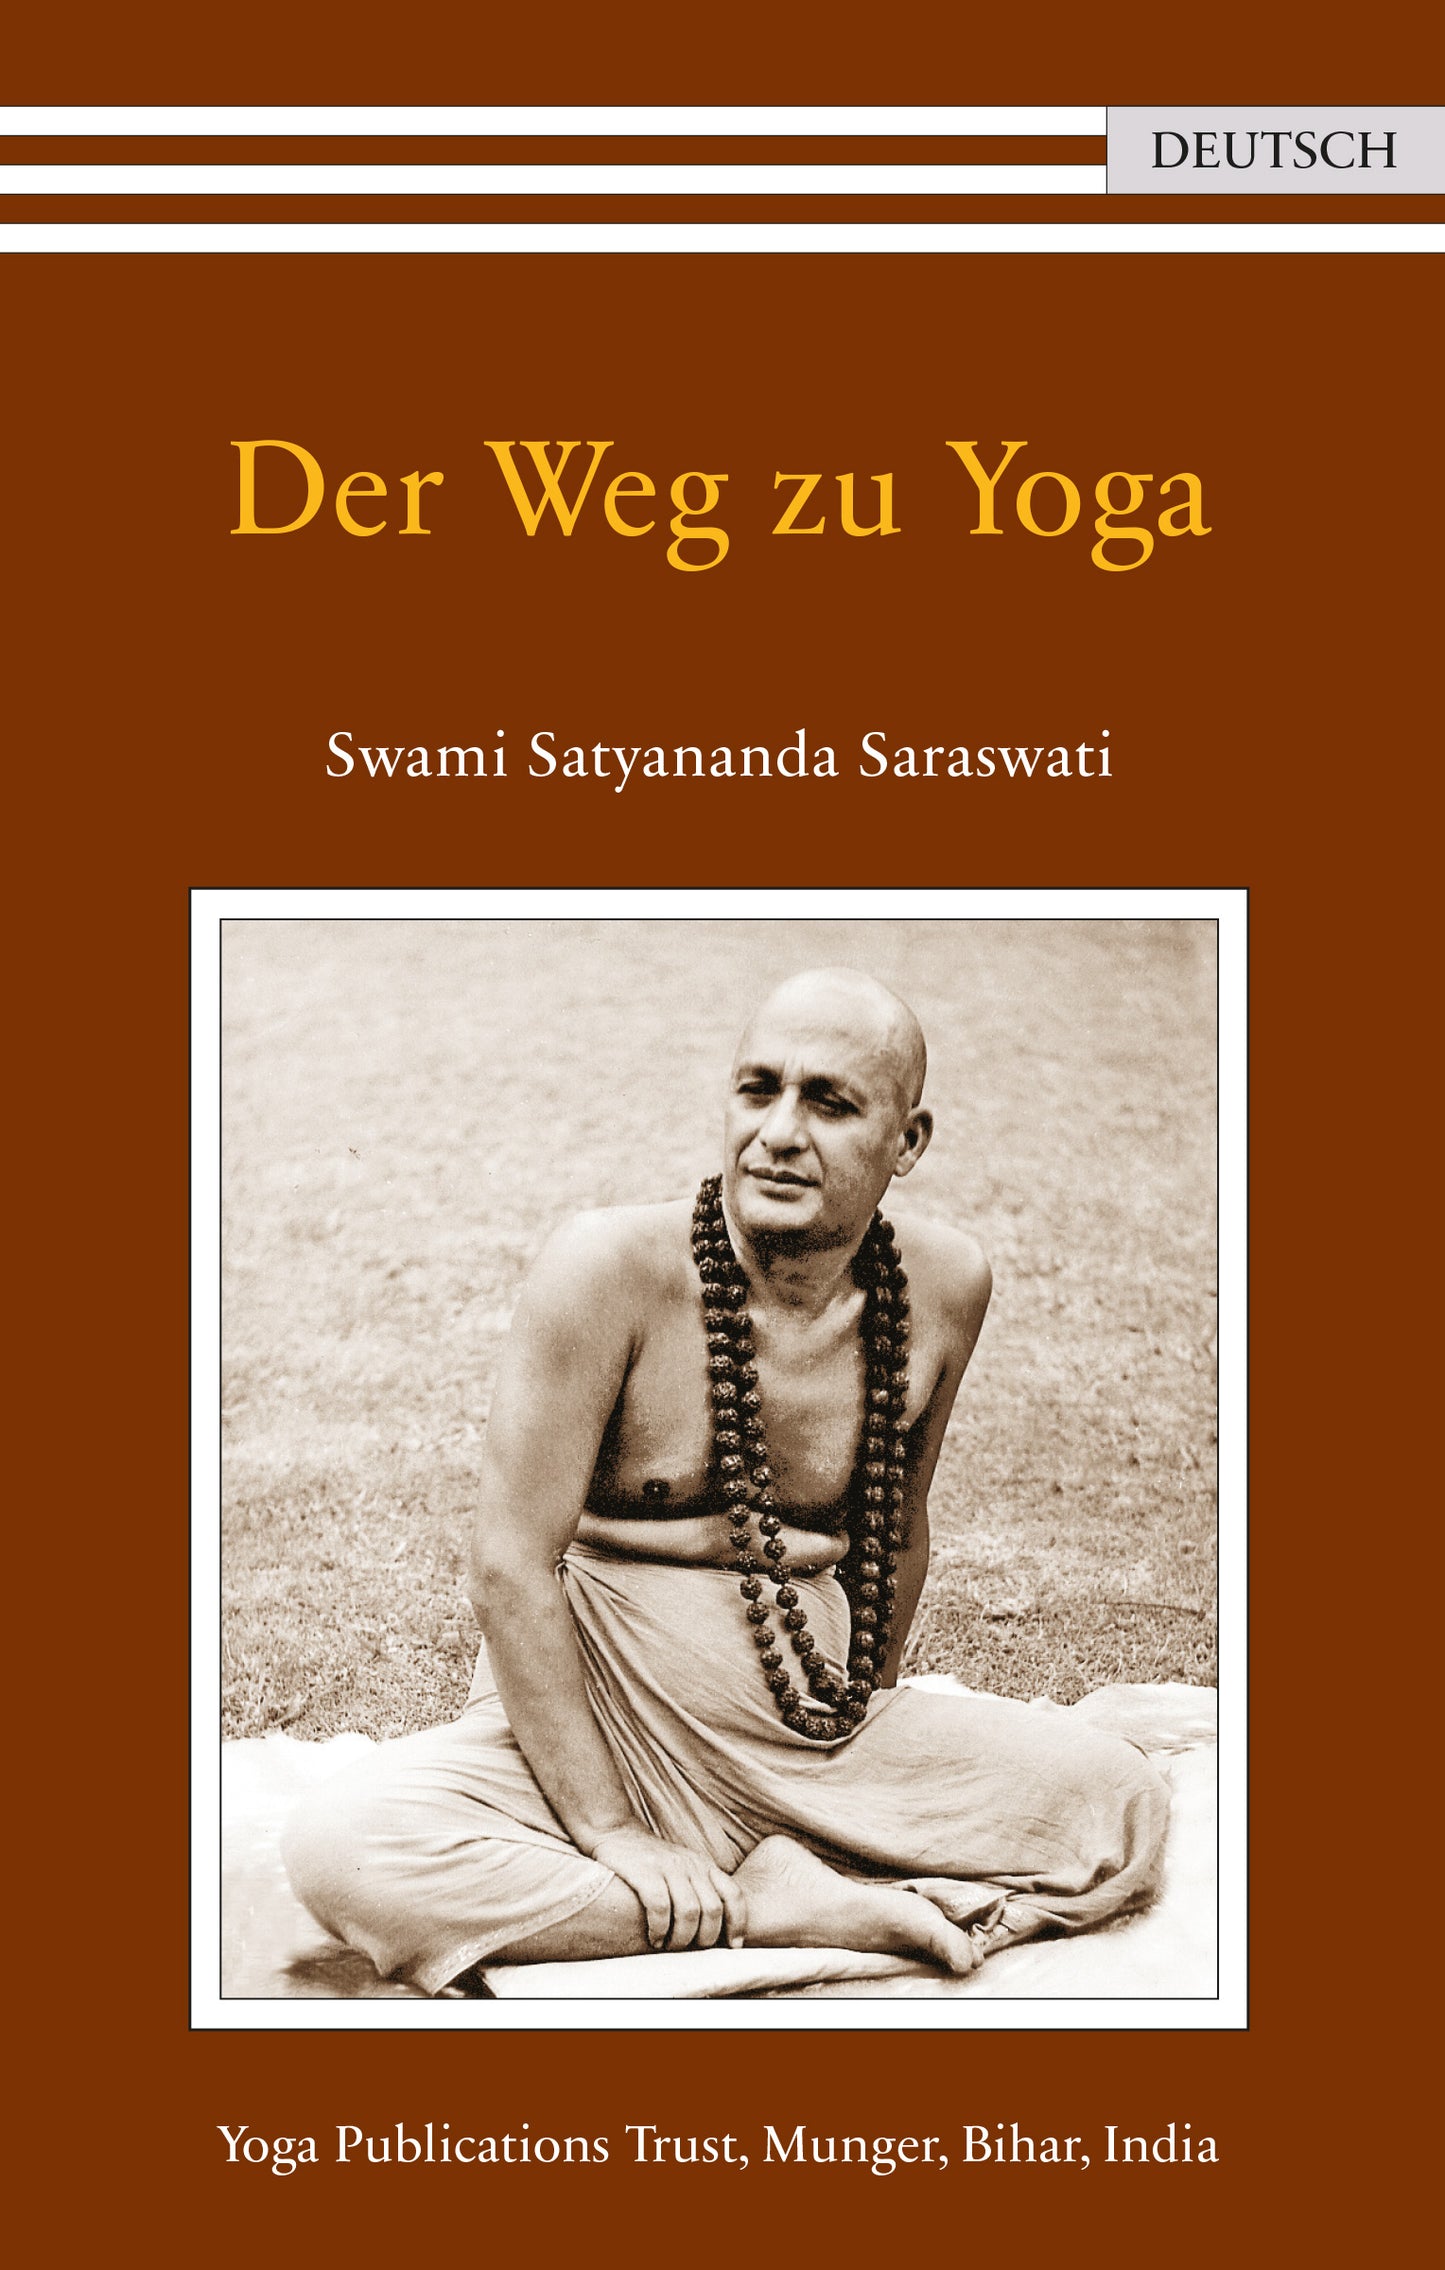 Yoga Buch Cover – Der Weg zu Yoga